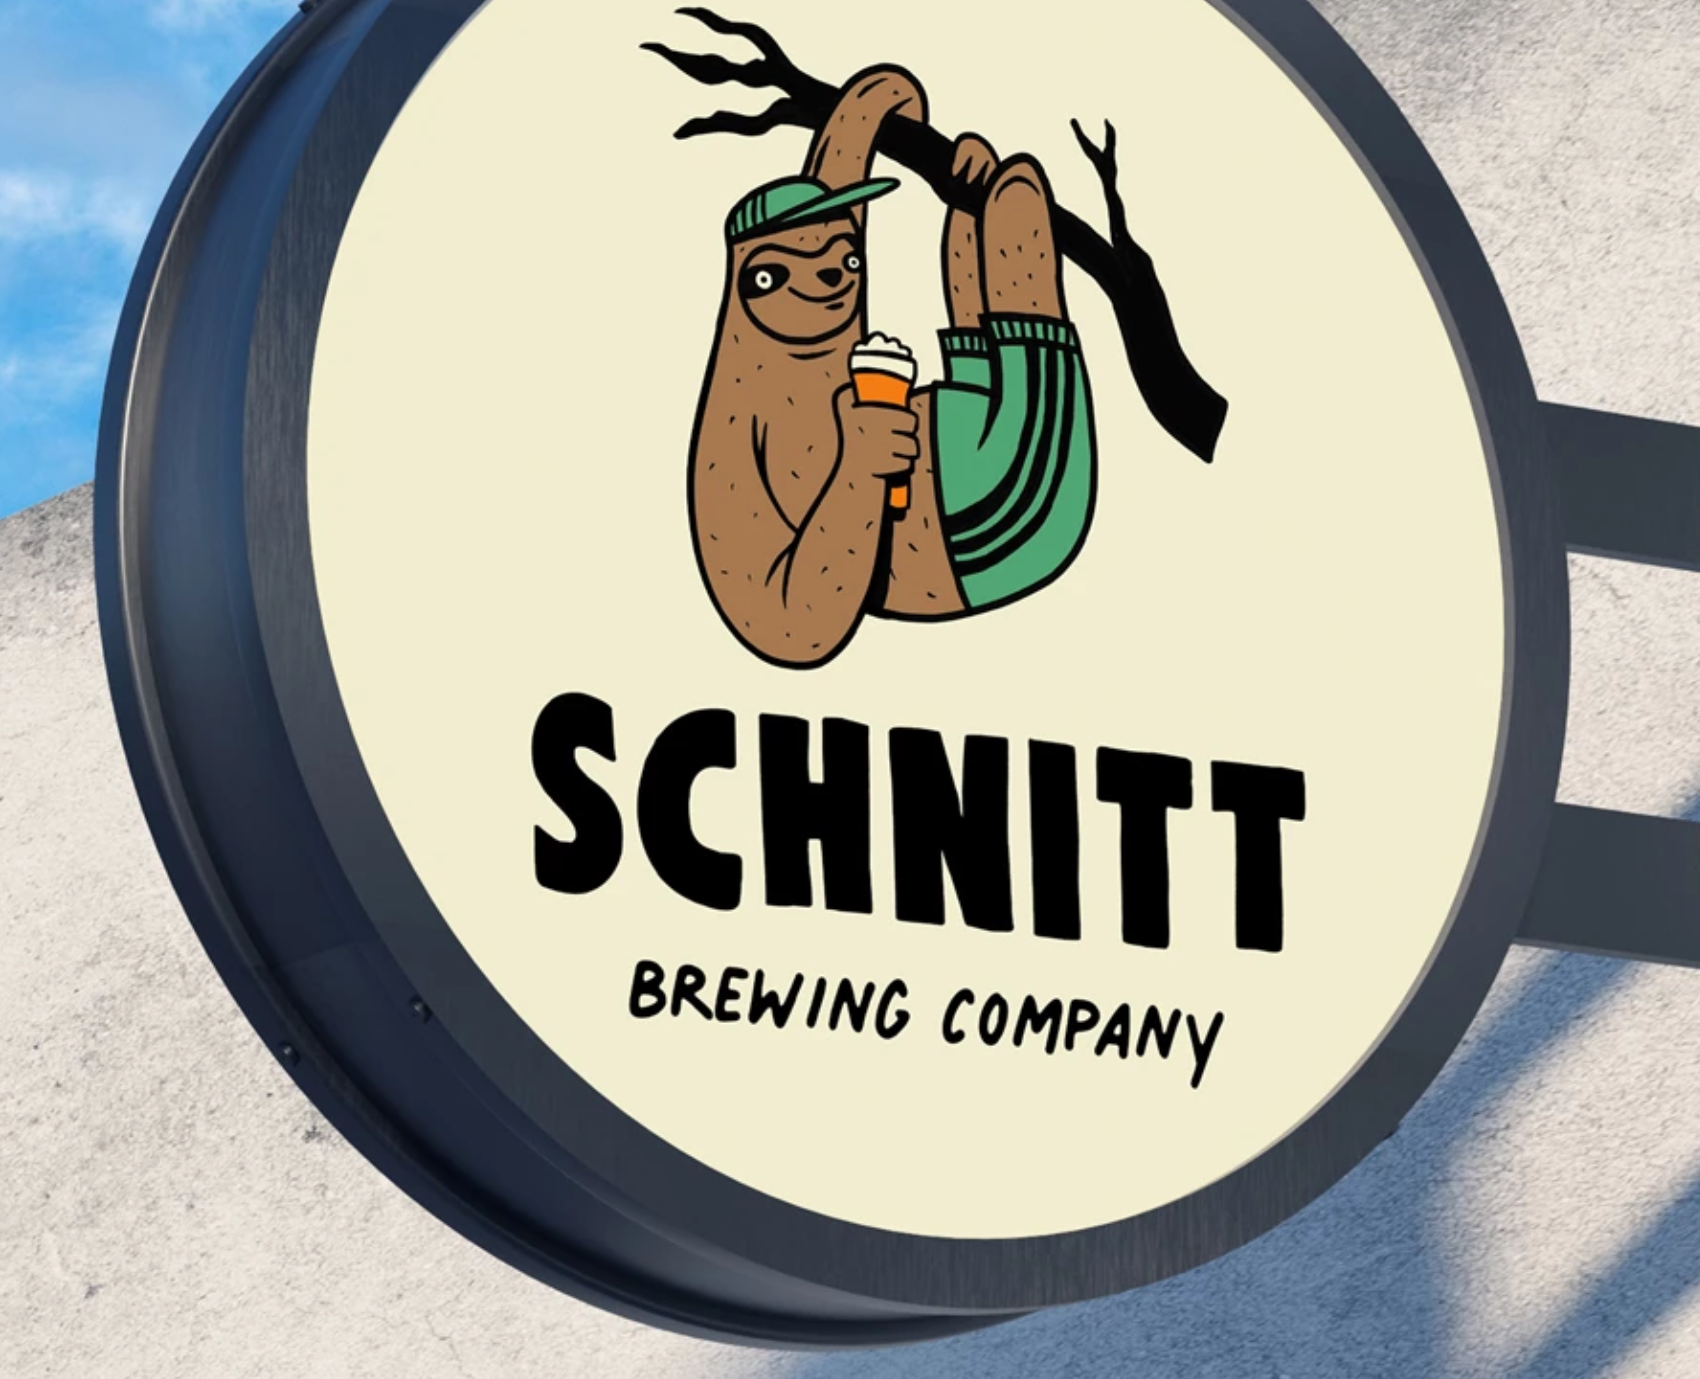 Schnitt brewing company